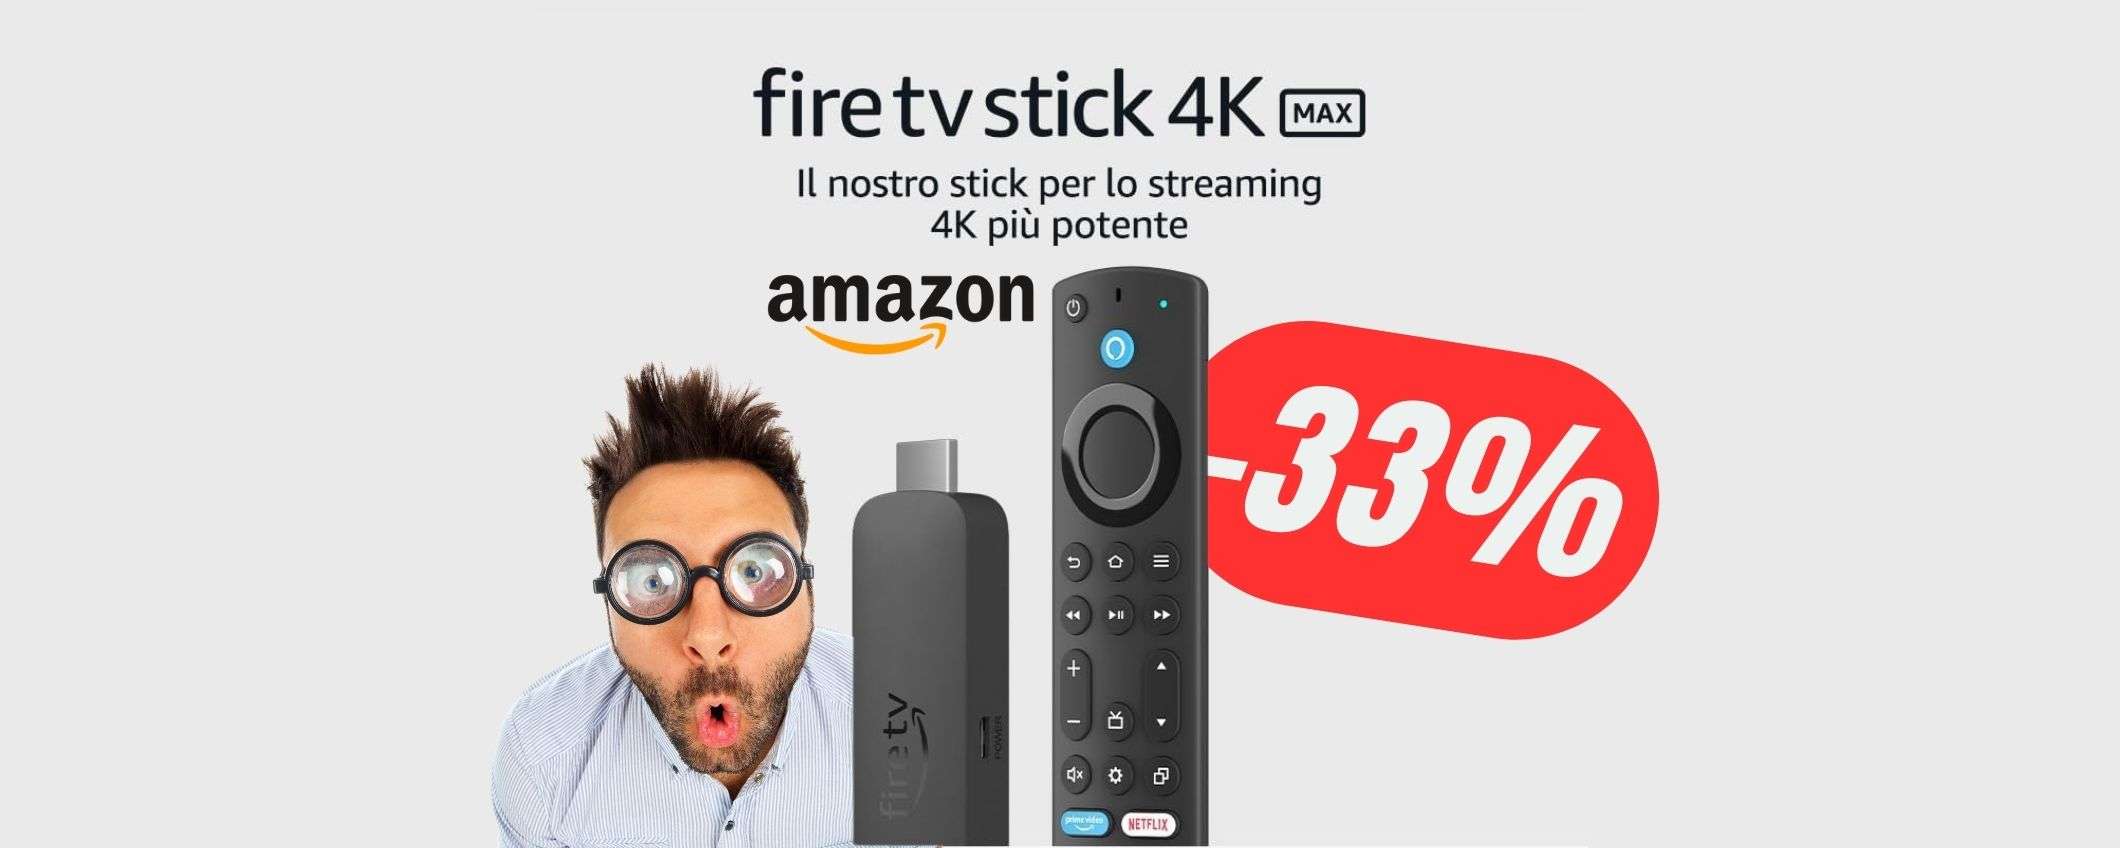 La Amazon Fire TV Stick più potente CROLLA del -33%!